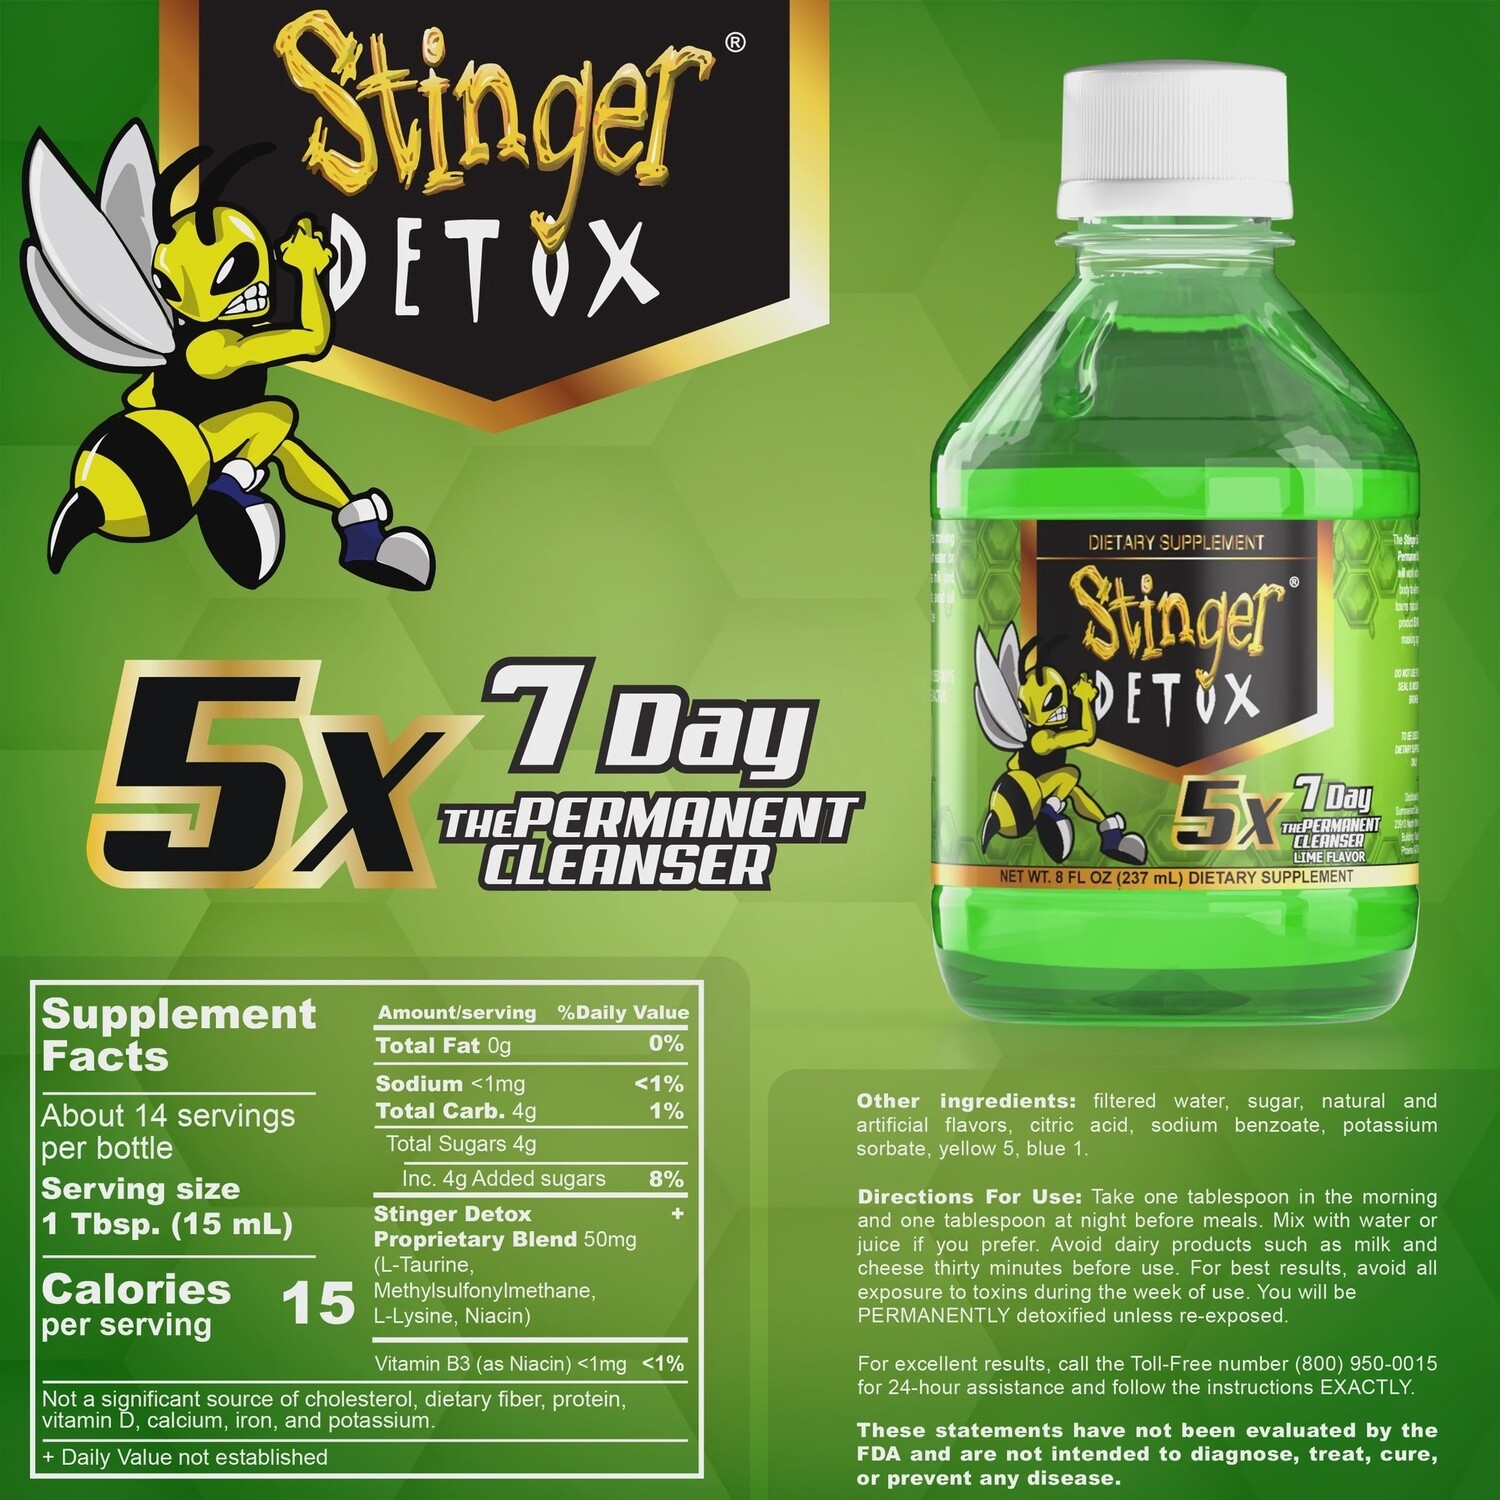 Stinger Detox 7-Day Permanent Cleanser